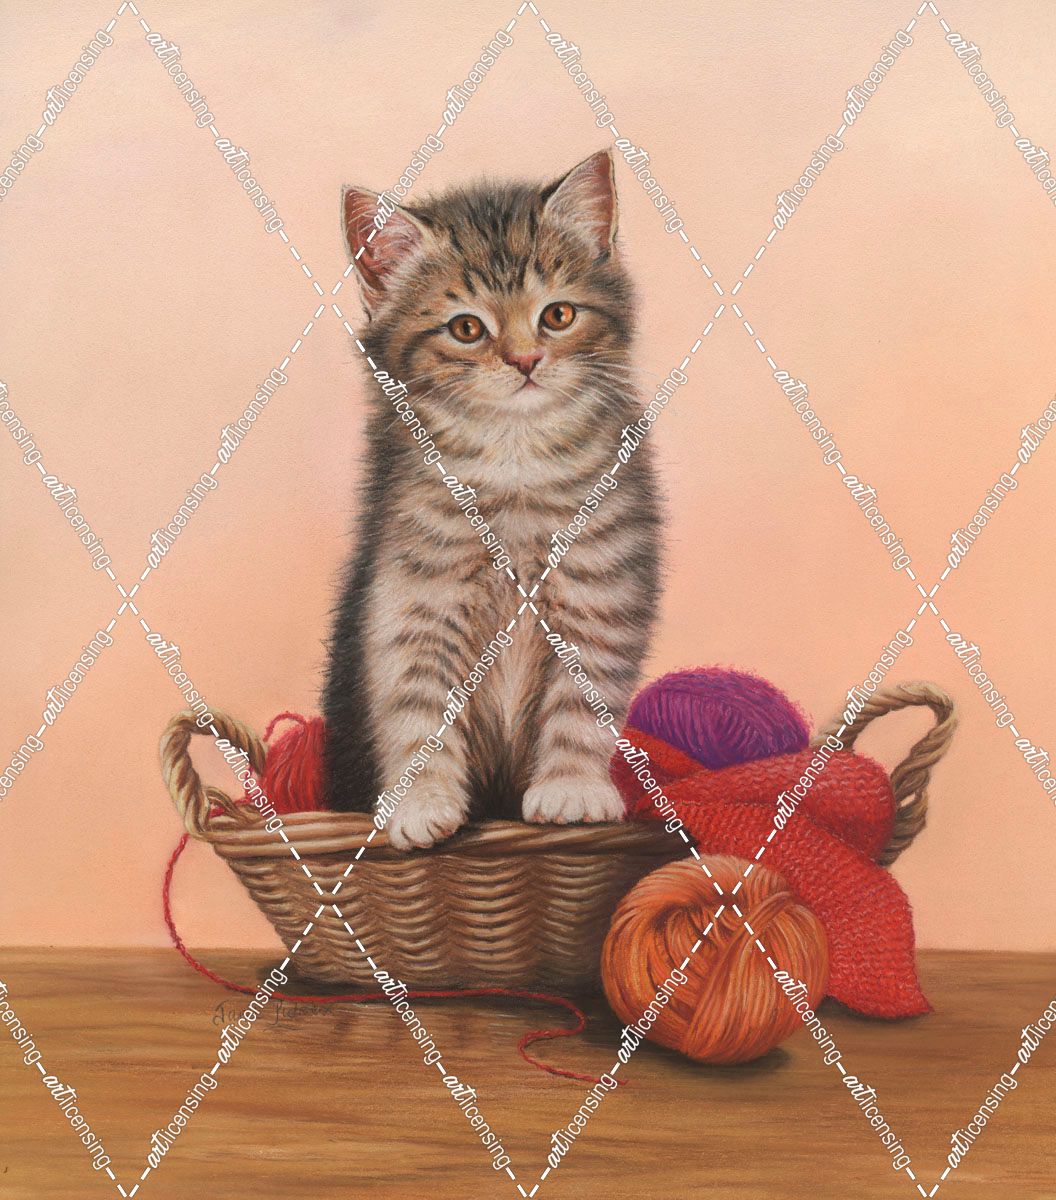 Kitten And Wool Basket